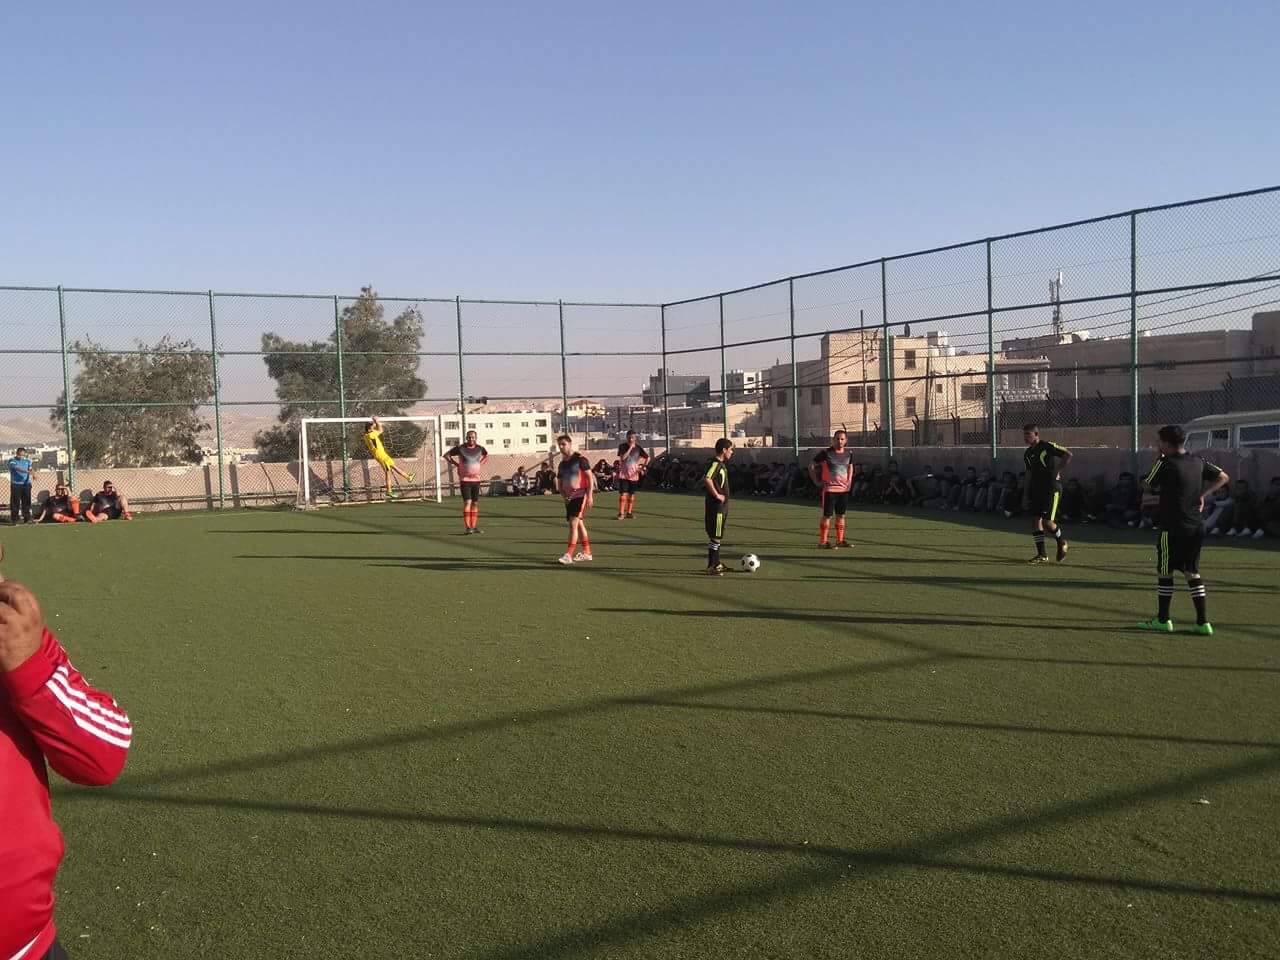 التنمية تطلق بطولة كرة القدم لدور التأهيل والرعاية الاجتماعية